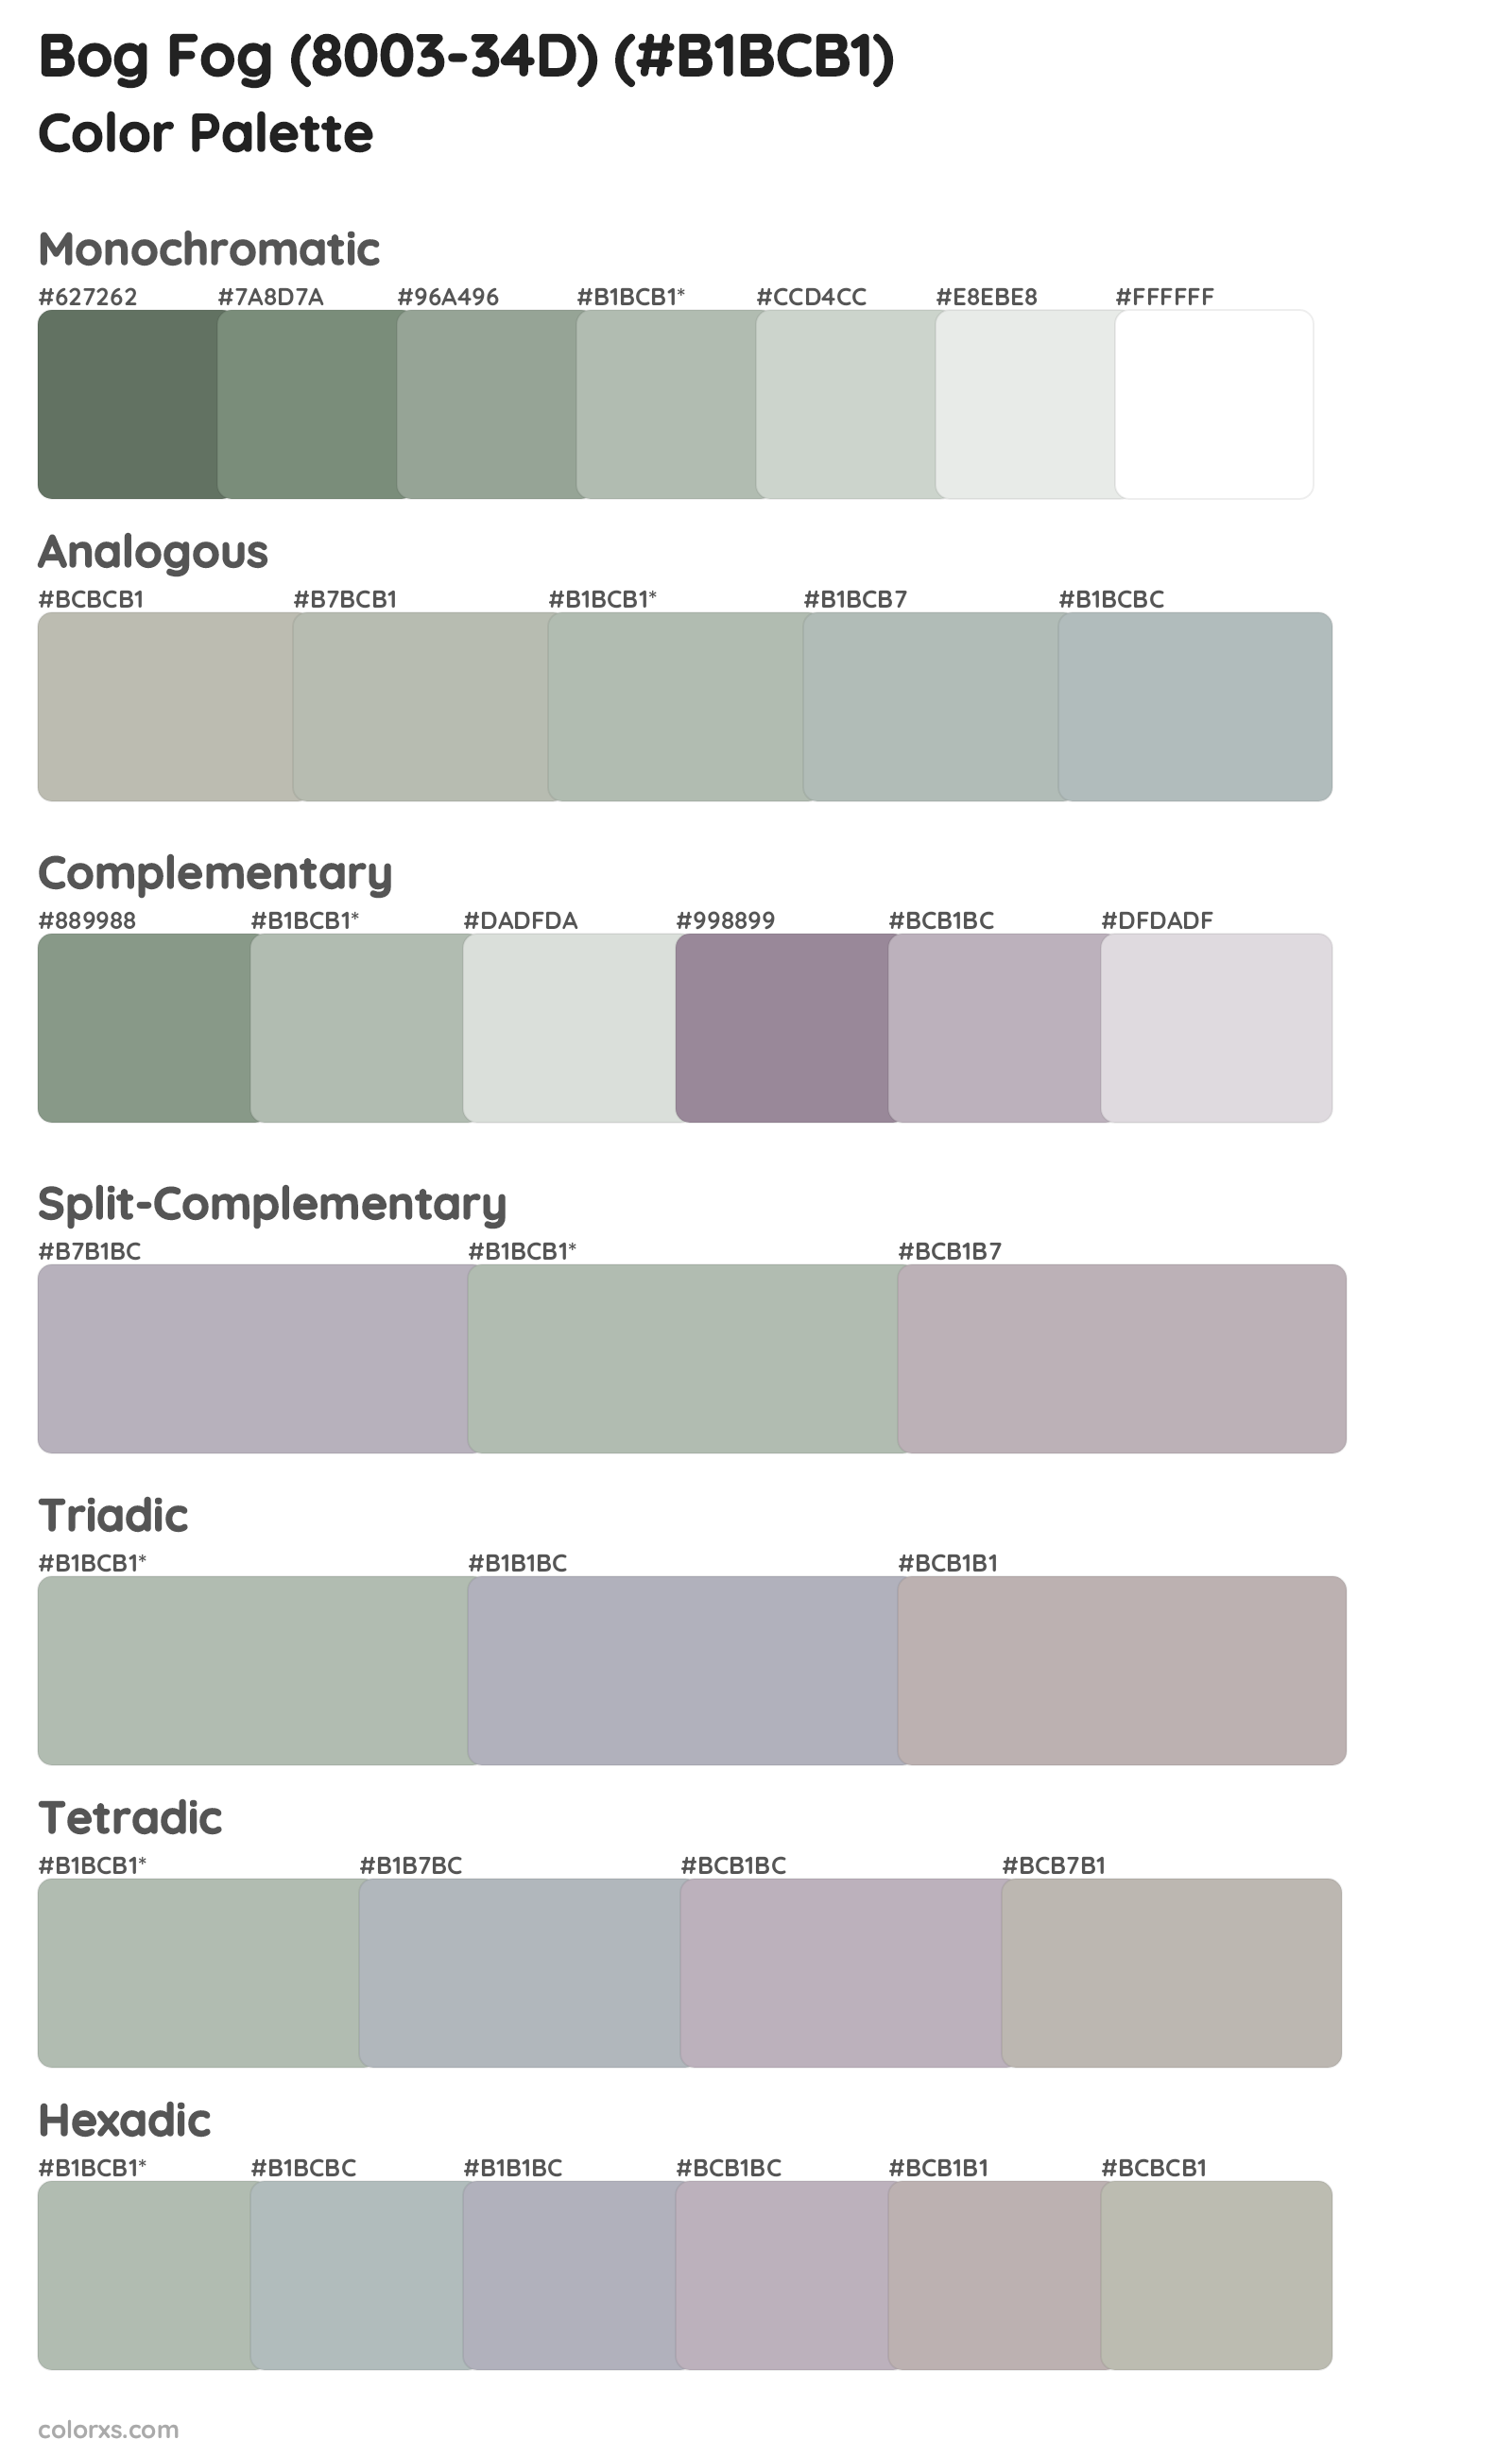 Bog Fog (8003-34D) Color Scheme Palettes